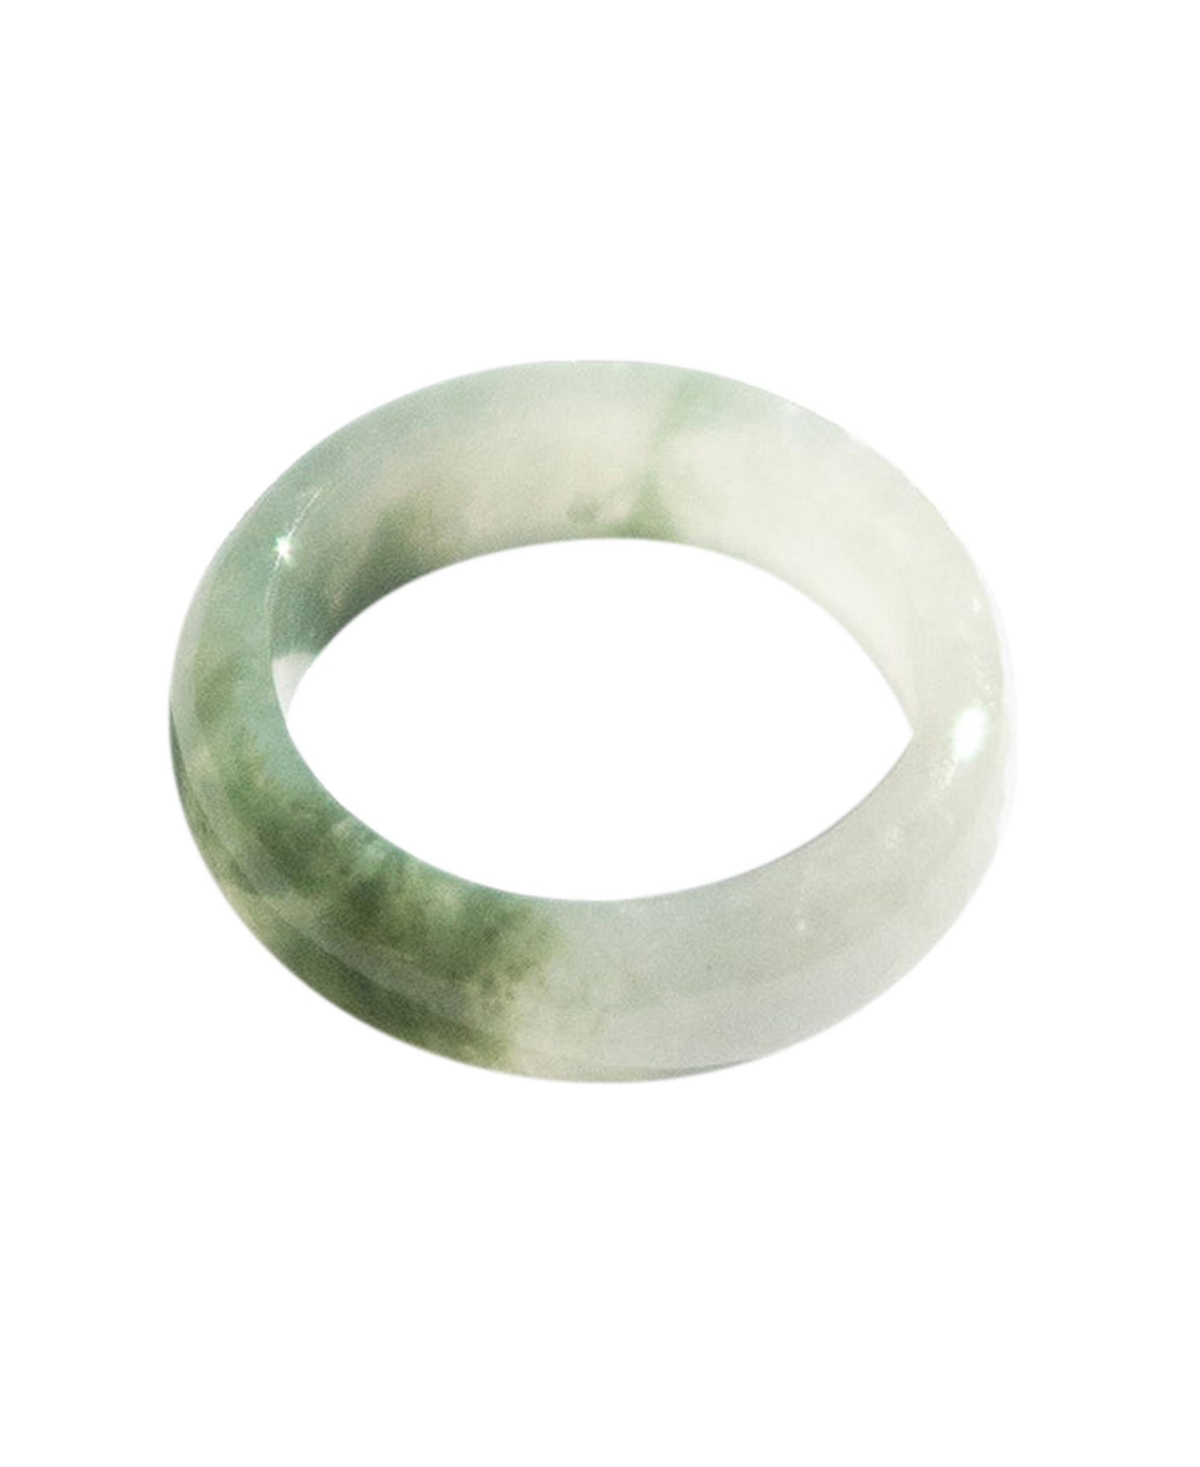 Koi - Mottled green jade ring - Green